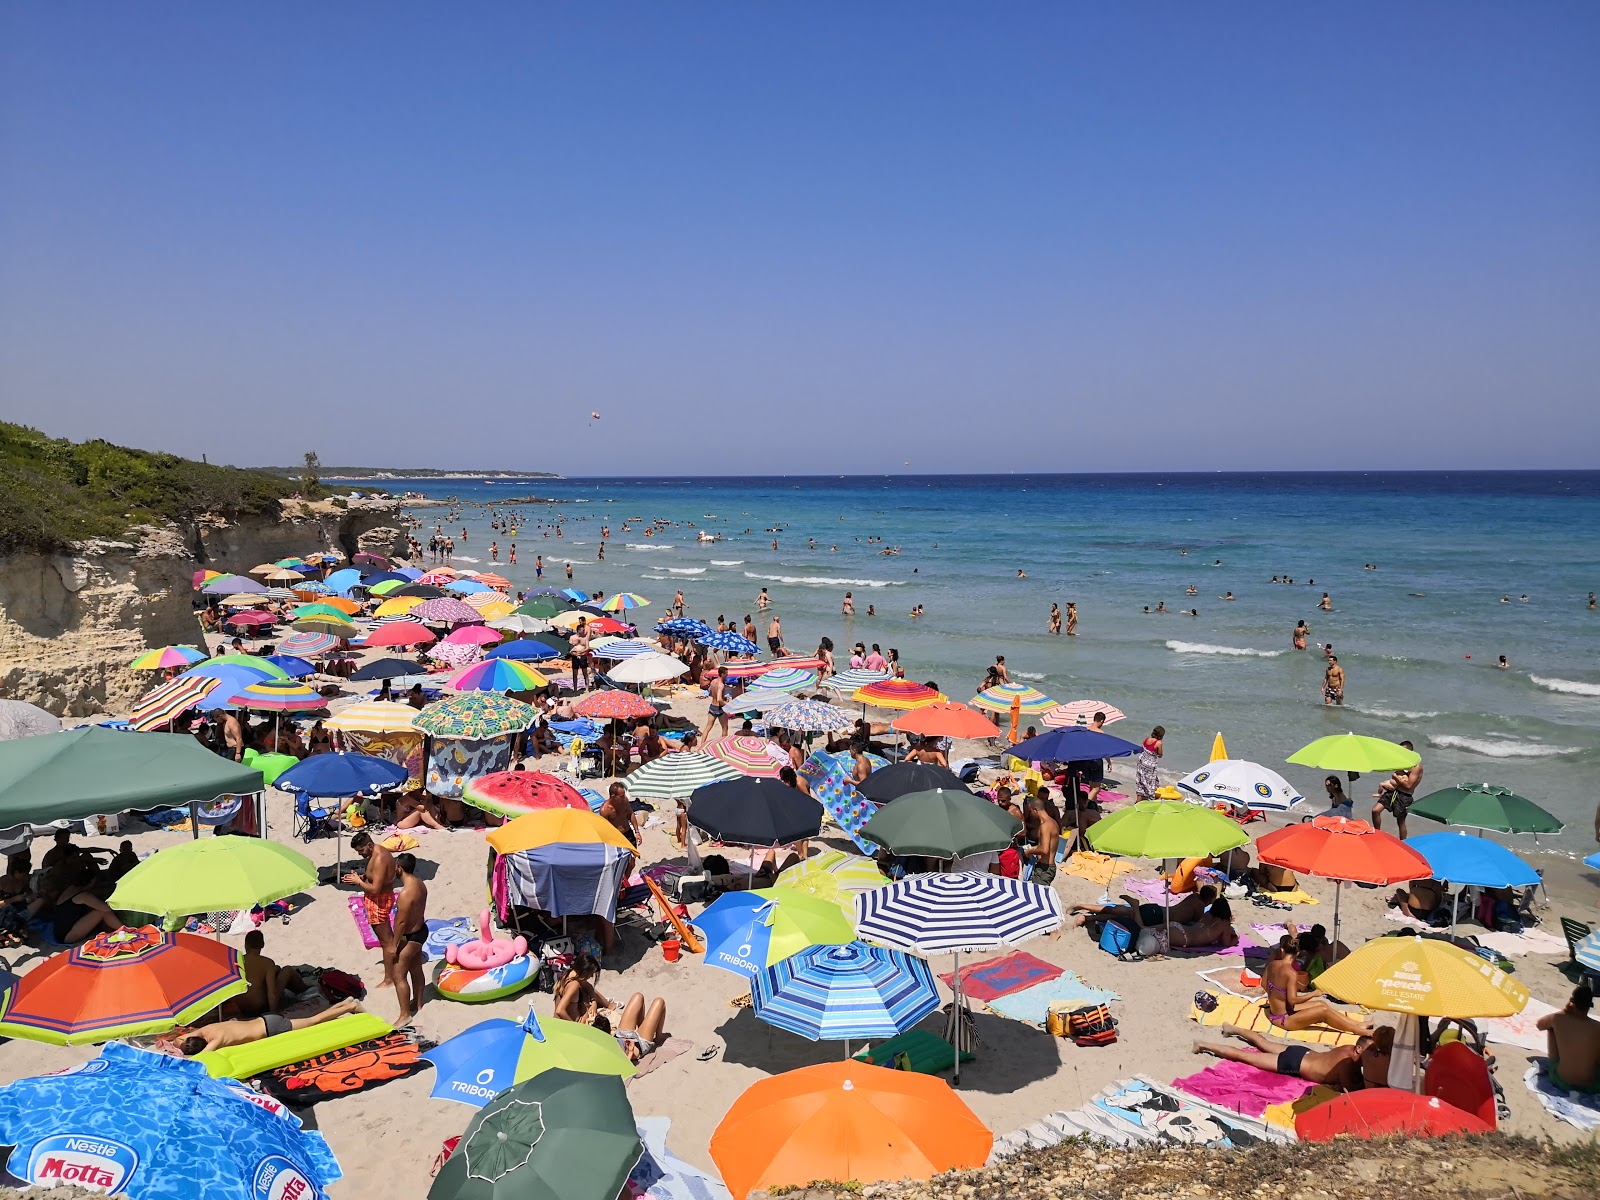 Foto von Spiaggia Baia dei Turchi befindet sich in natürlicher umgebung